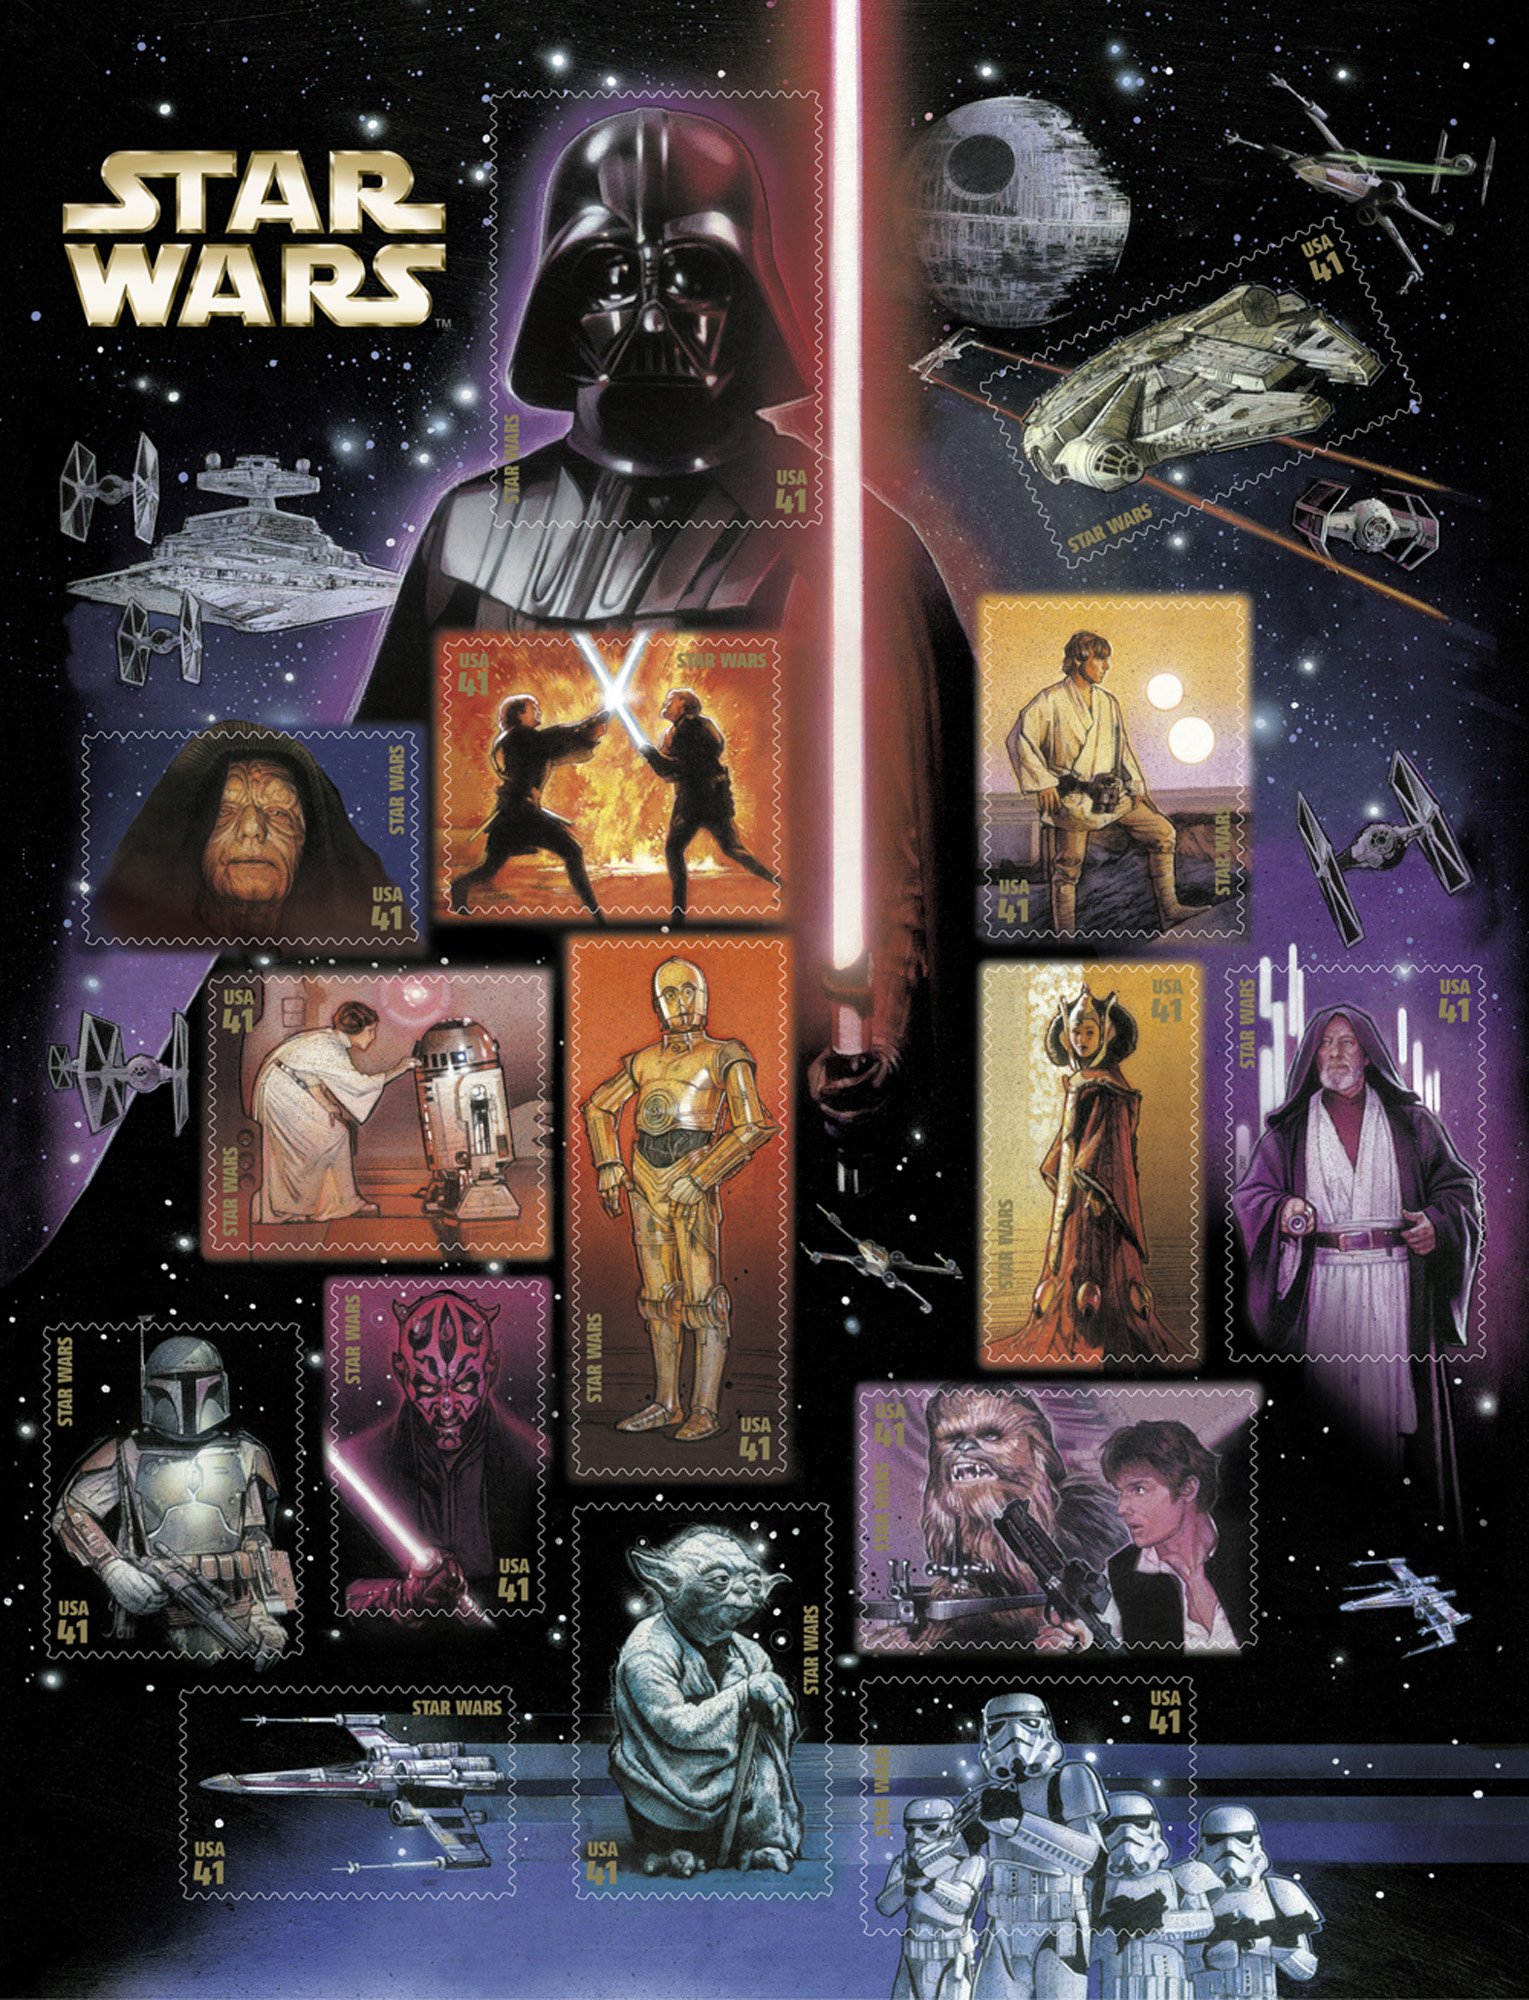 Den första Star Wars-filmen kom 1977. Den sista filmen släpptes 2005.